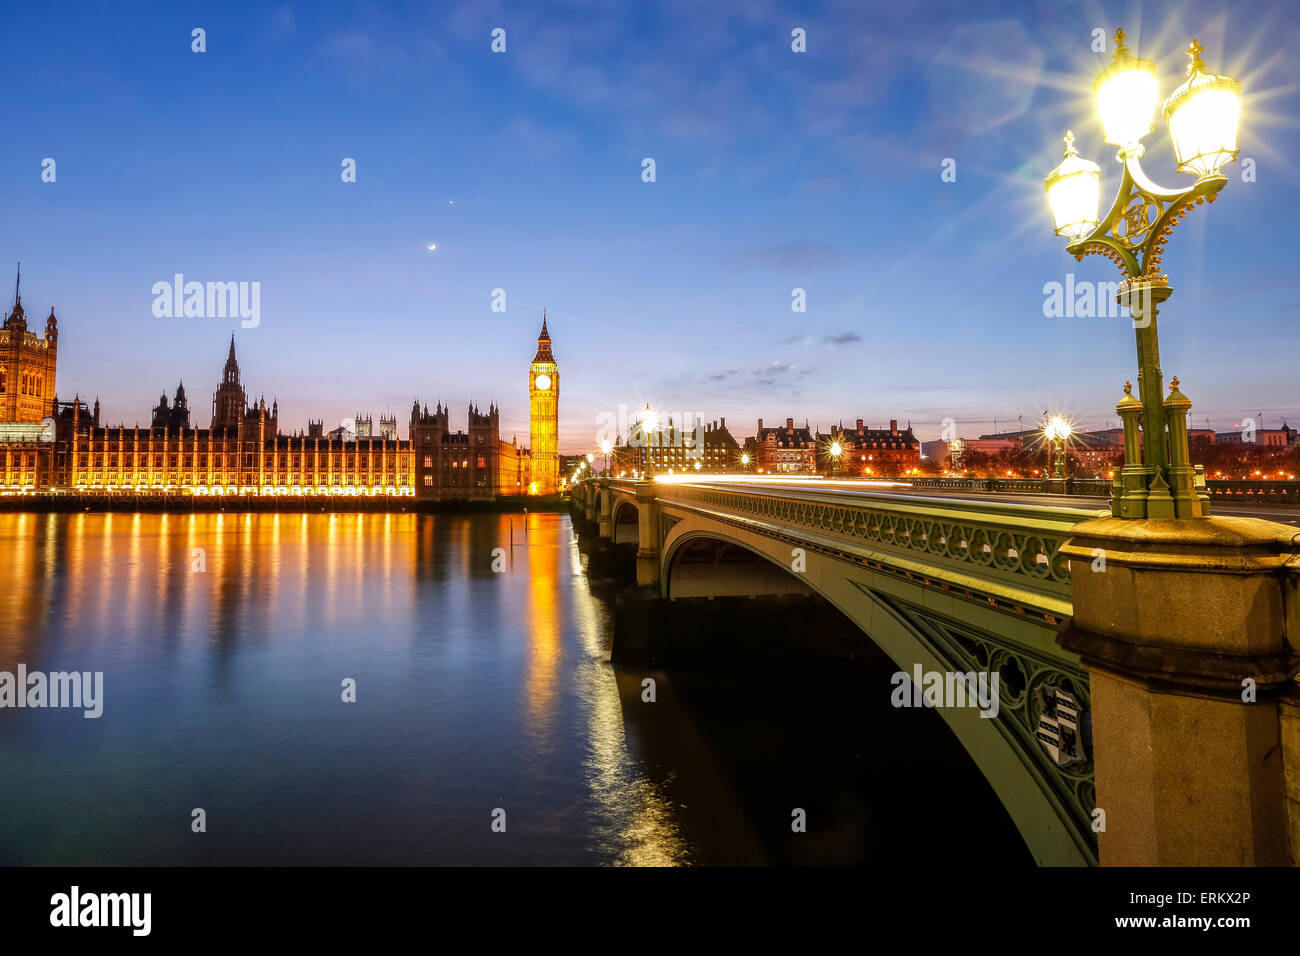 Vista del Big Ben y el Palacio de Westminster, el río Támesis y el puente de Westminster durante la noche, Londres, Inglaterra, Reino Unido, Europa Foto de stock